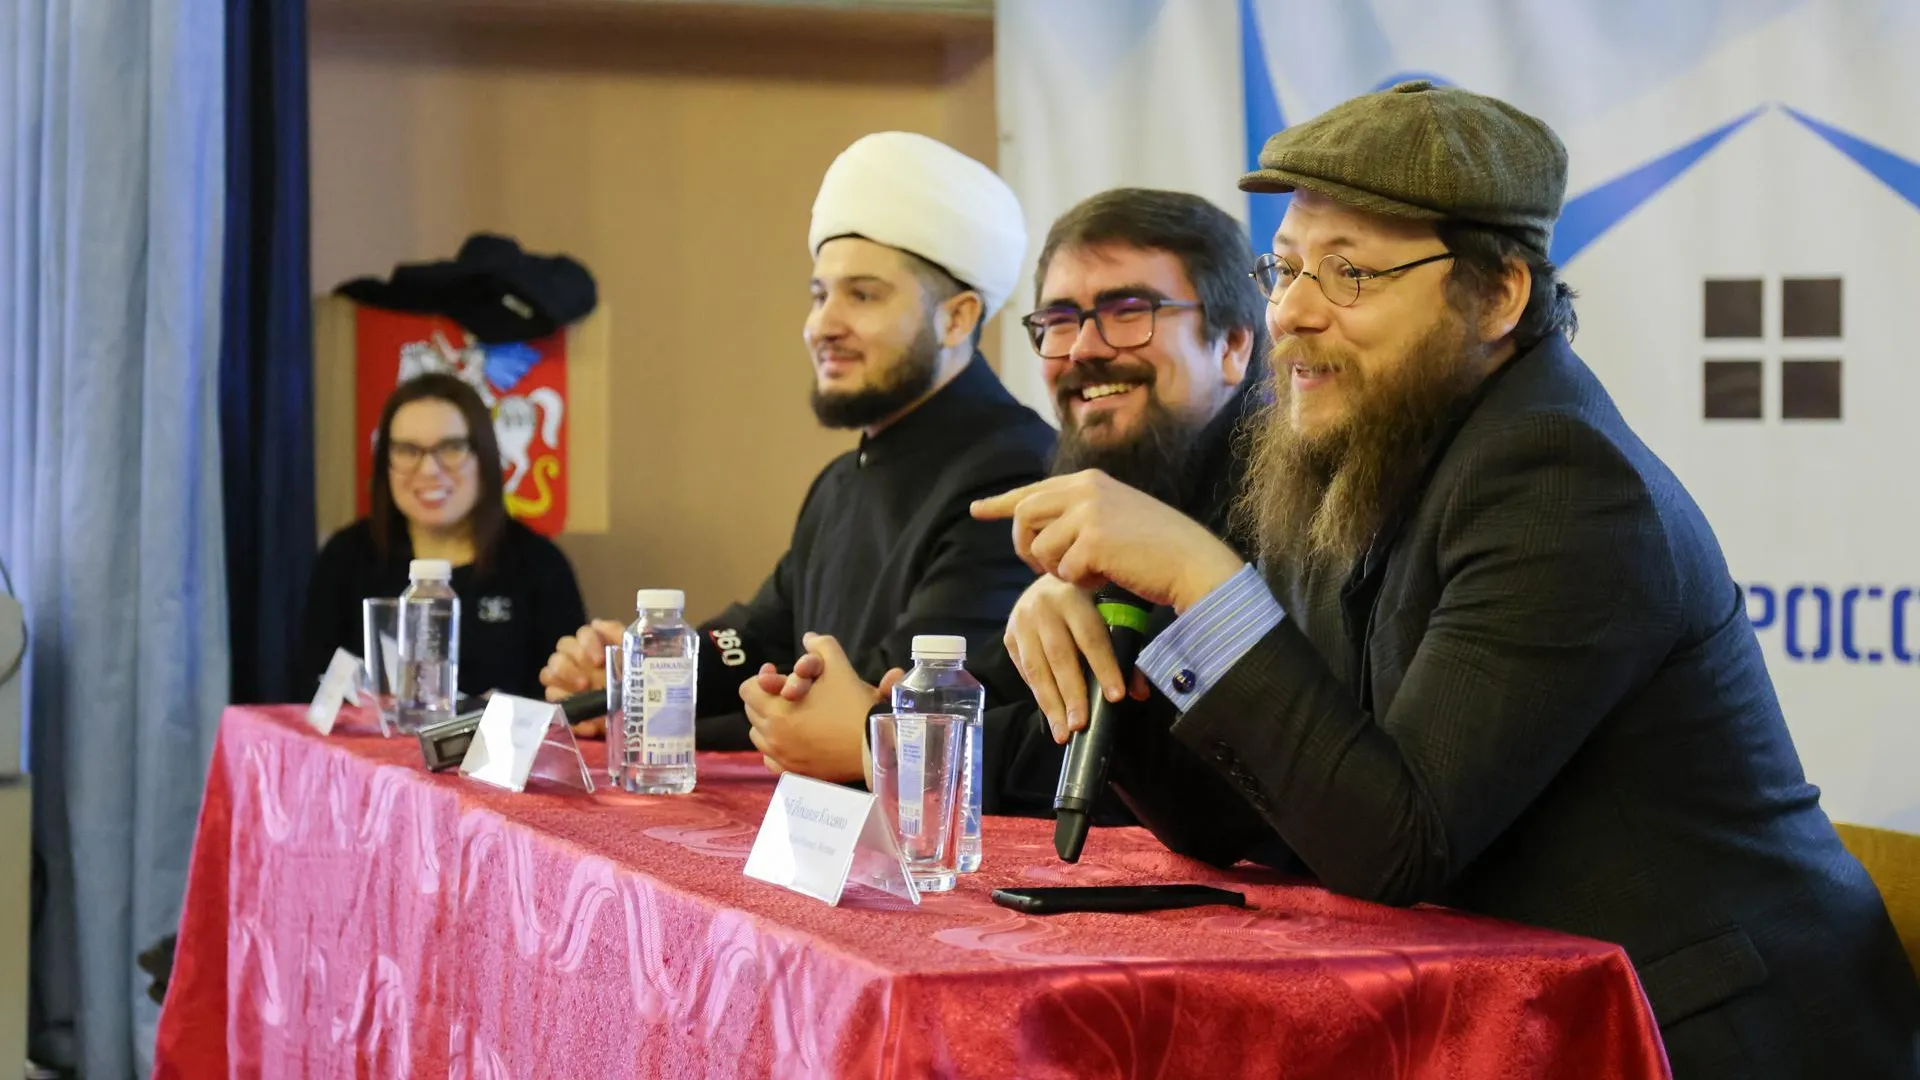 Молодежь Подмосковья пообщалась с представителями 3 религий на форуме «Школа добрососедства»